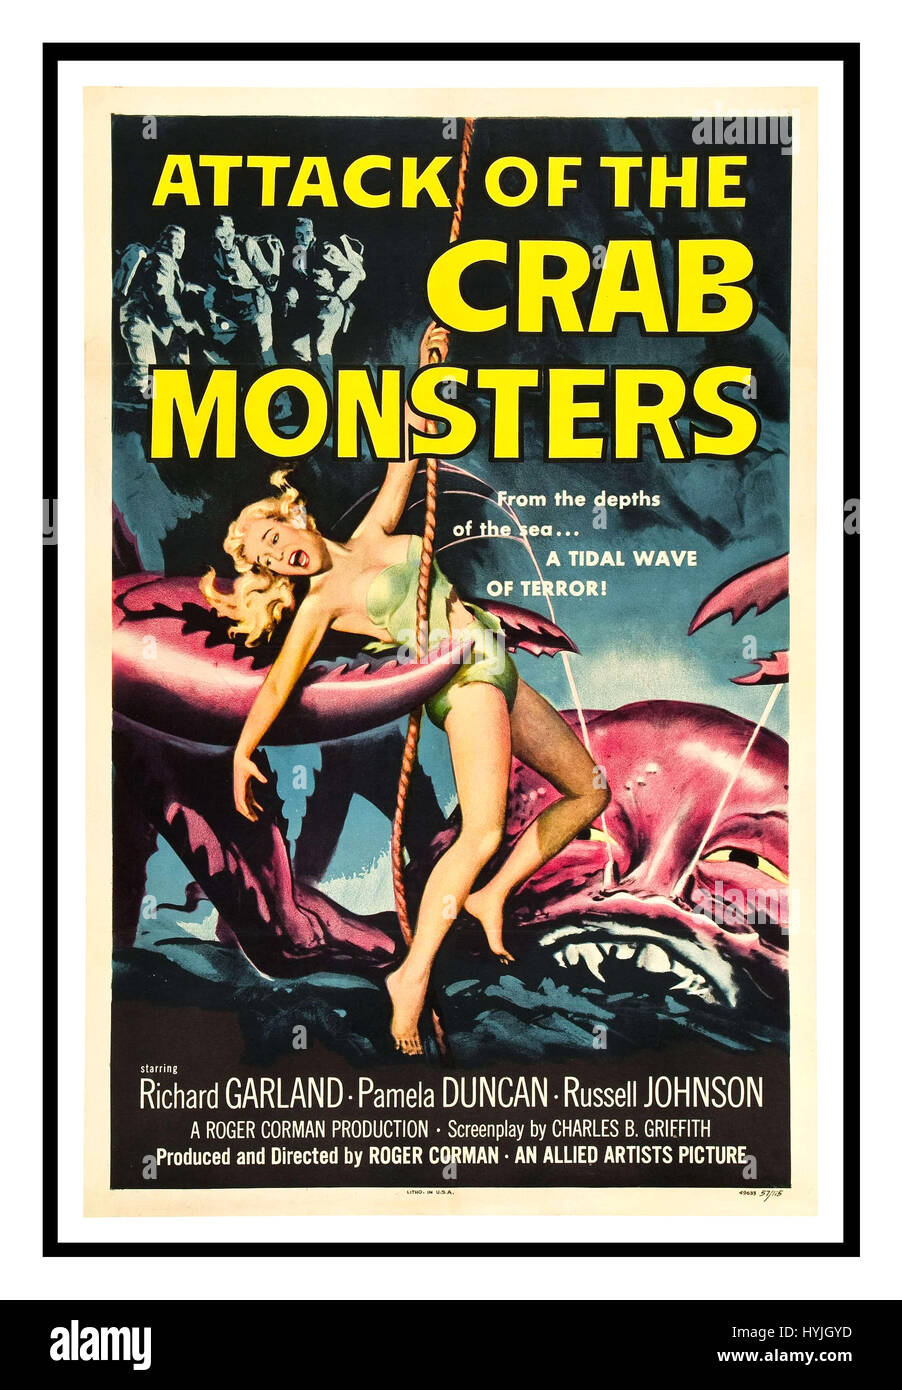 ATTAQUE DES MONSTRES DE CRABE affiche du film d'époque annonce le film de science-fiction d'horreur de 1957 attaque des monstres de crabe produit et réalisé par Roger Corman, avec Richard Garland, Pamela Duncan et Russell Johnson Banque D'Images